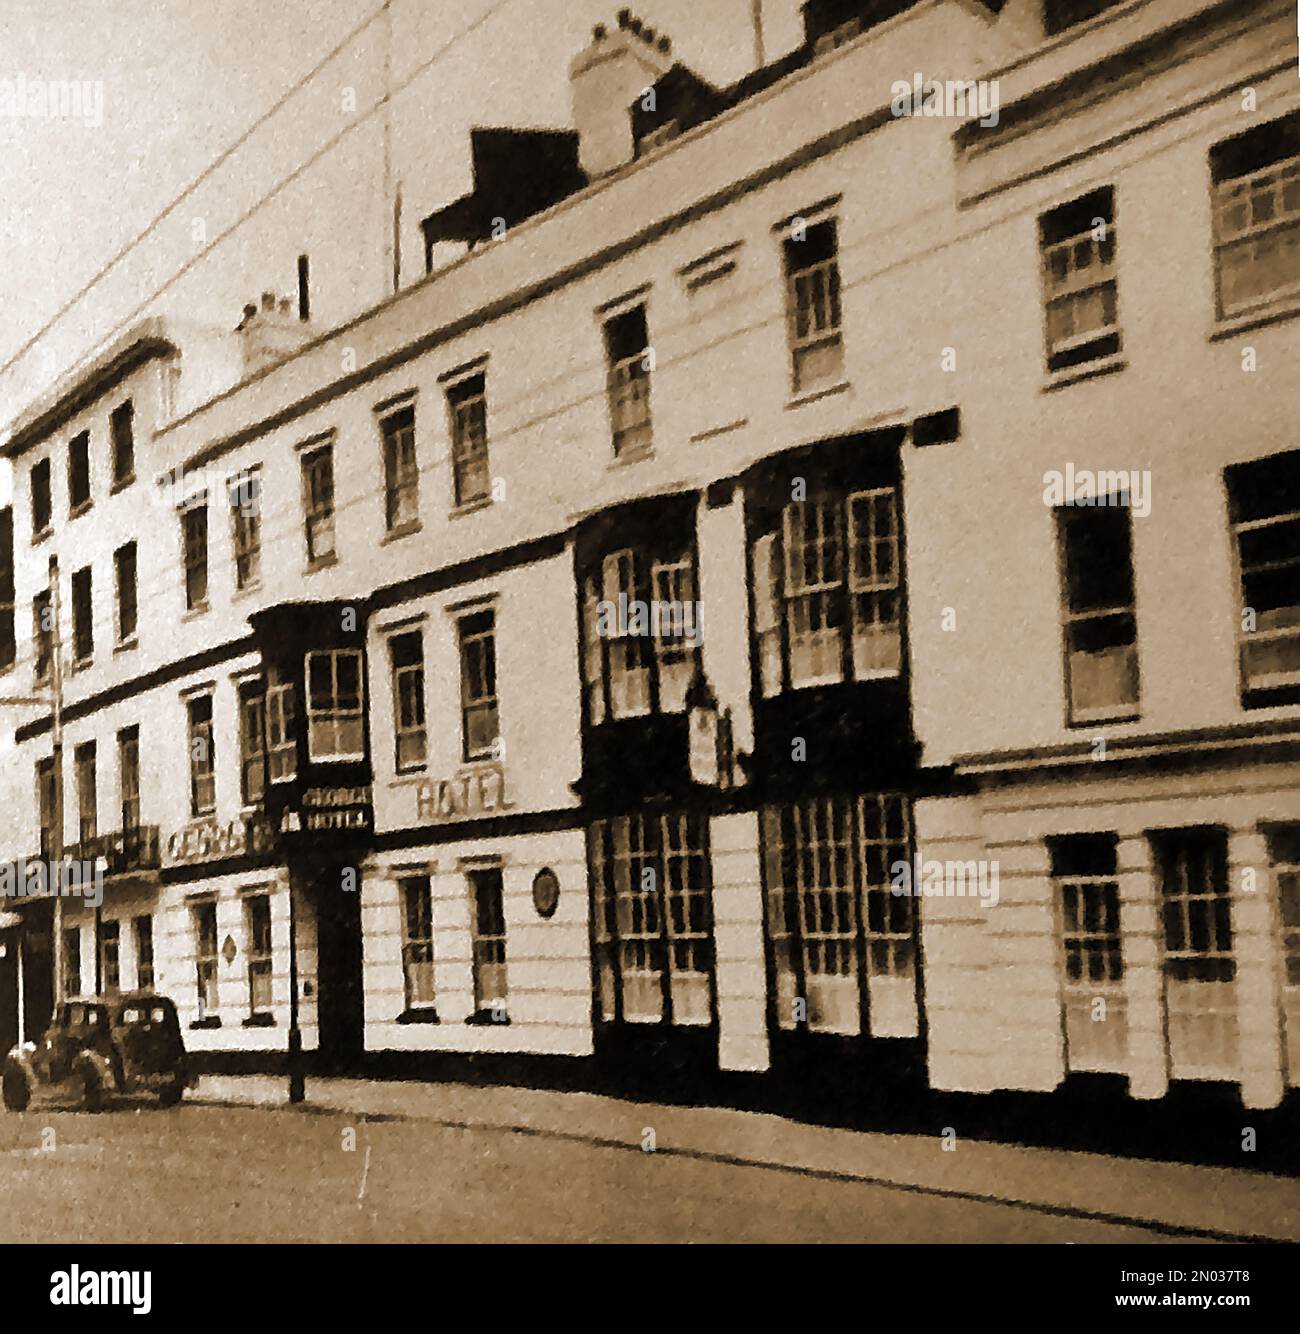 Britische Pubs Inns & Taverns - Ein etwa 1940 altes Foto des George in Portsmouth, wie es aussah, bevor es im Zweiten Weltkrieg durch Bomben zerstört wurde. Bei der Durchsuchung des bombardierten Dachs wurden Hut und Handschuh von Matrosen aus dem 18. Jahrhundert entdeckt. Stockfoto